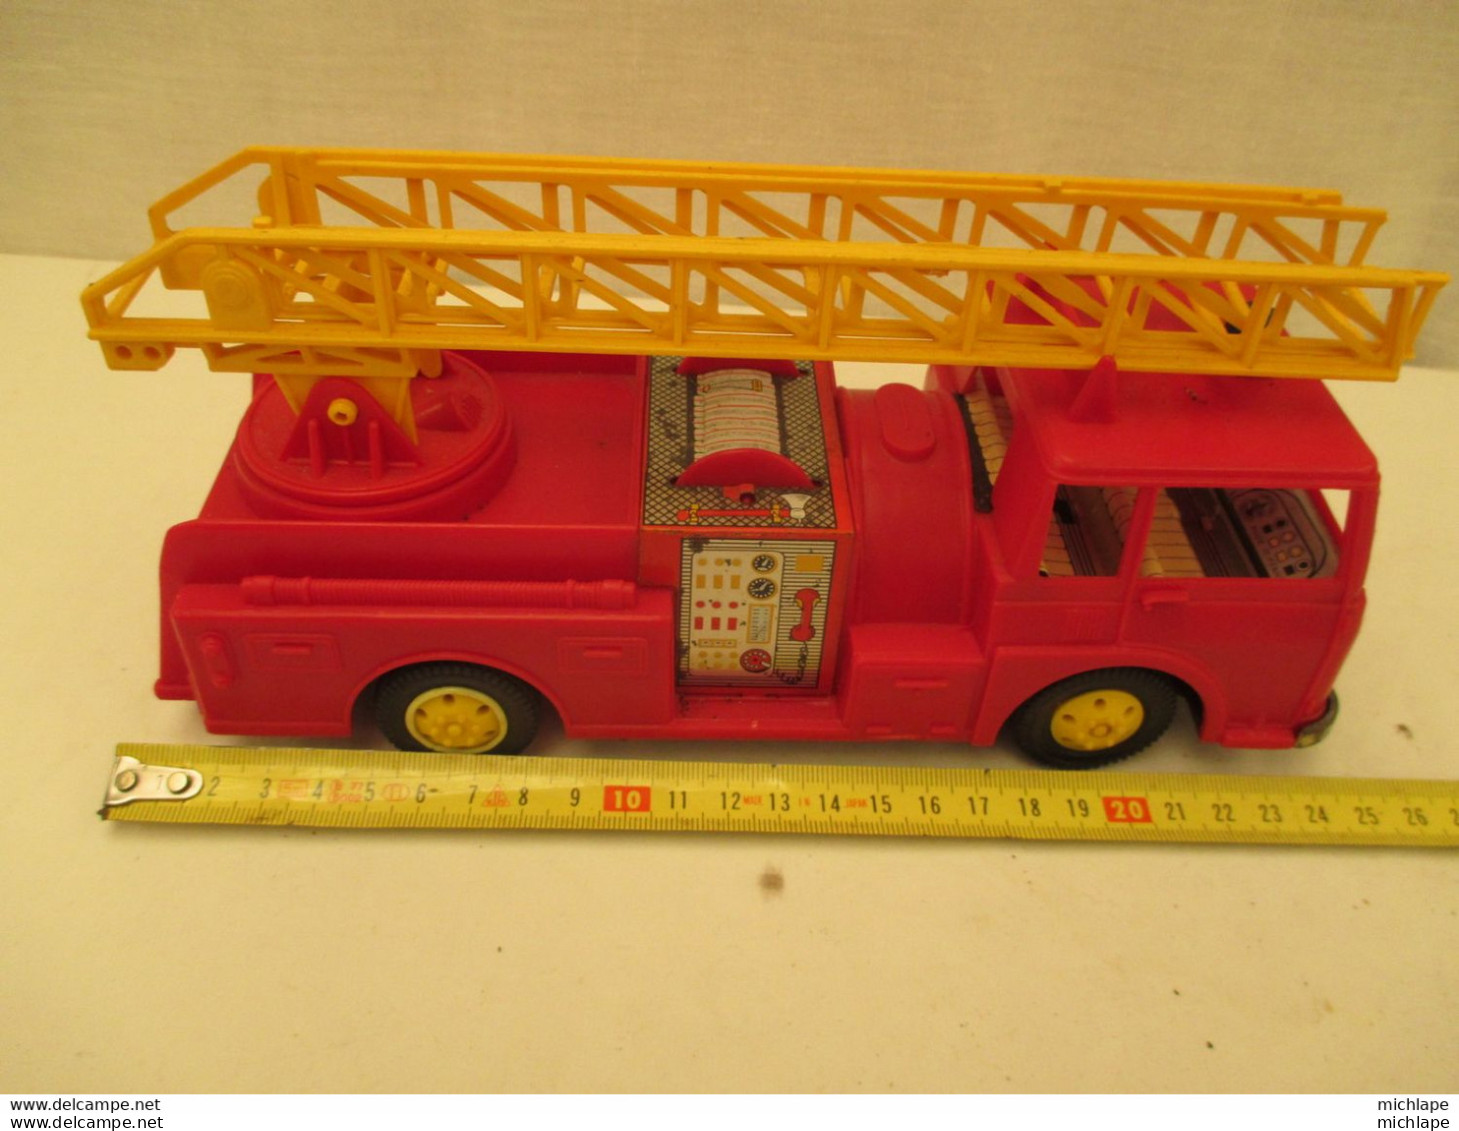 camion de pompier miniature - JOUSTRA -  dessous tole moteur a friction fonctionne - 24 cm sur 8 cm